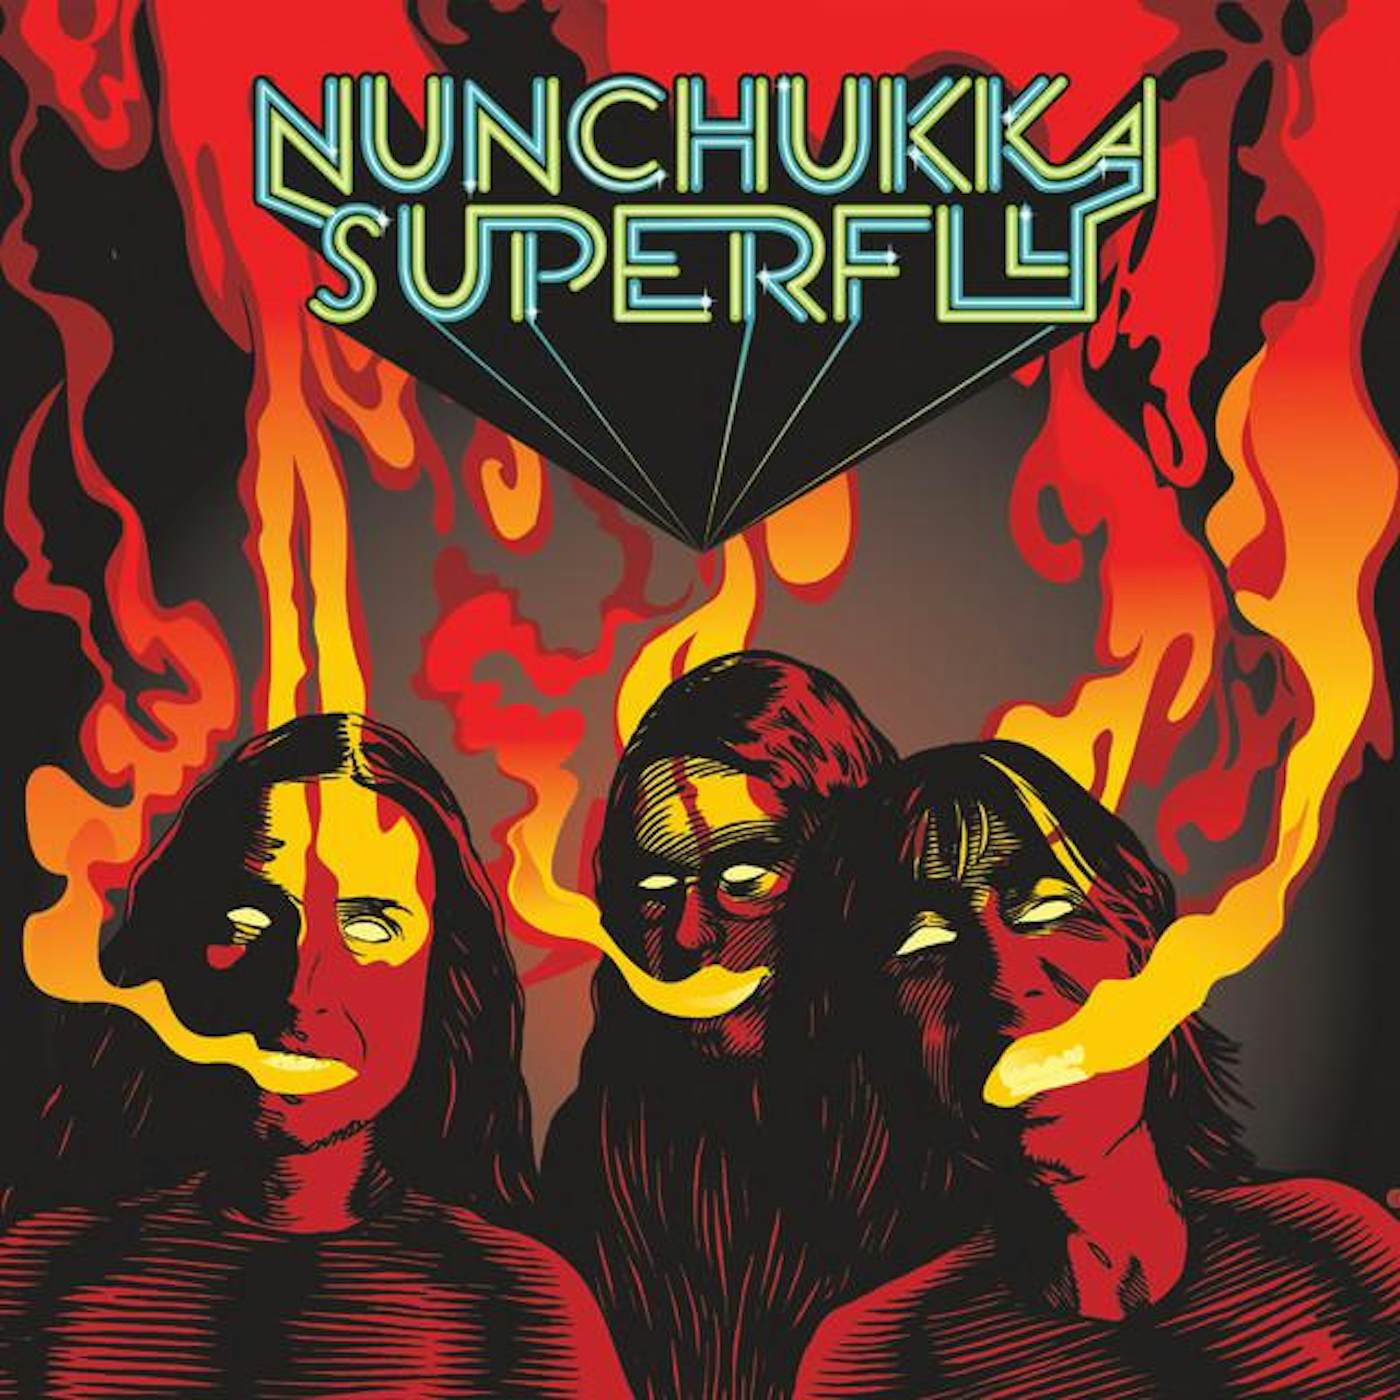 Nunchukka Superfly